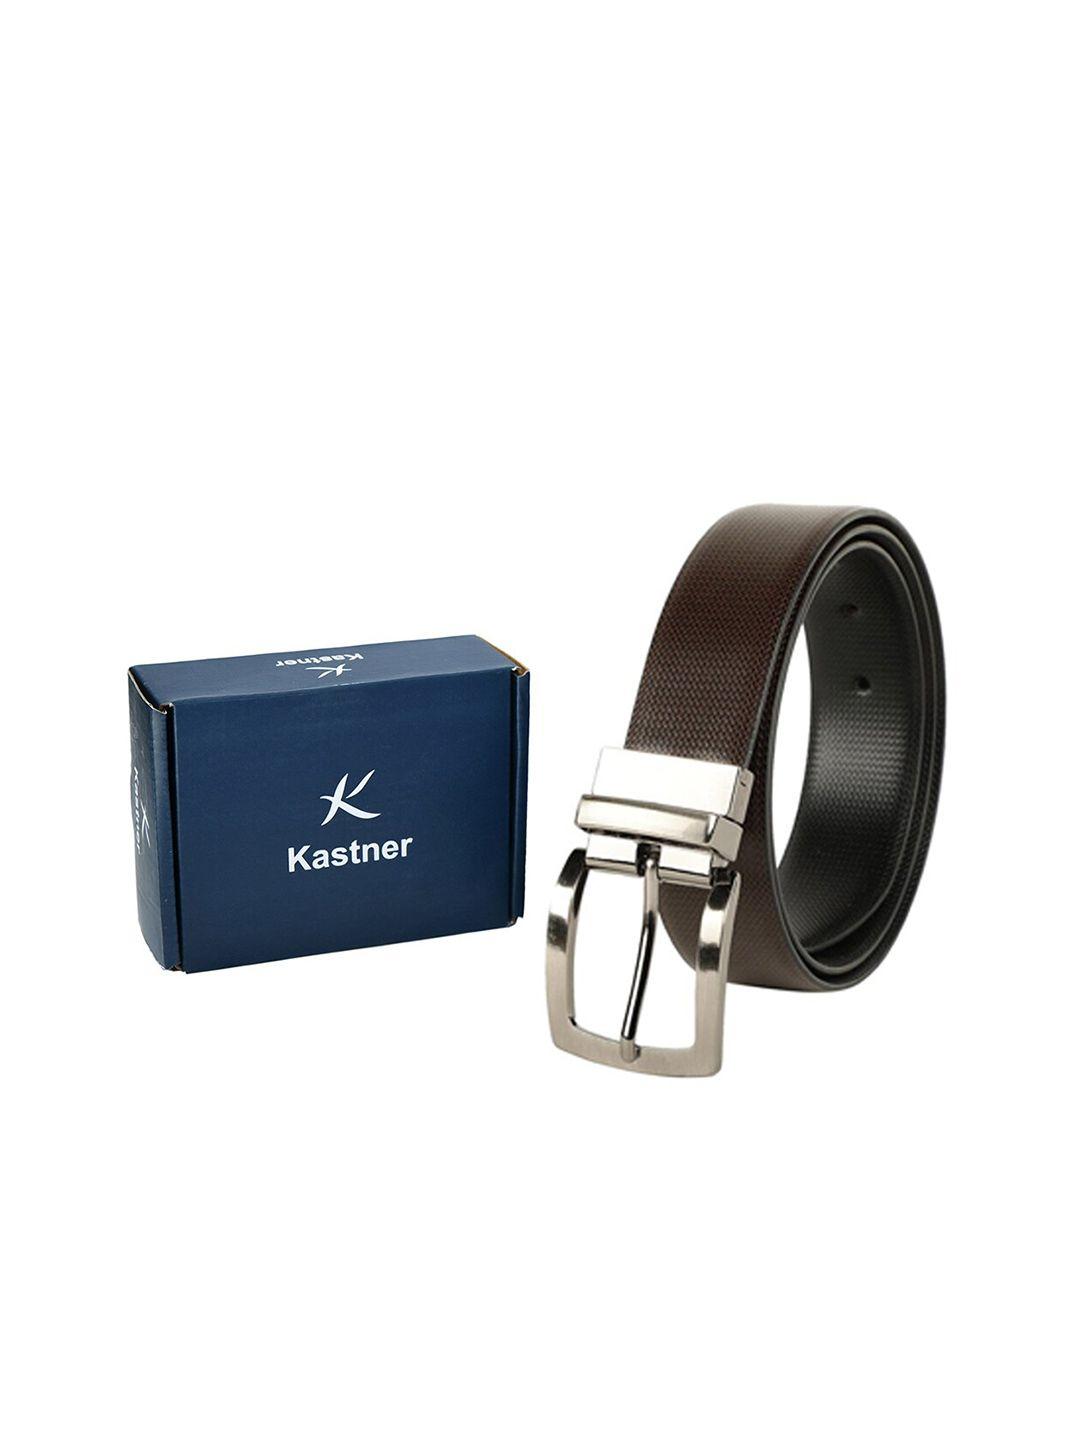 kastner men black & brown textured leather reversible formal belt